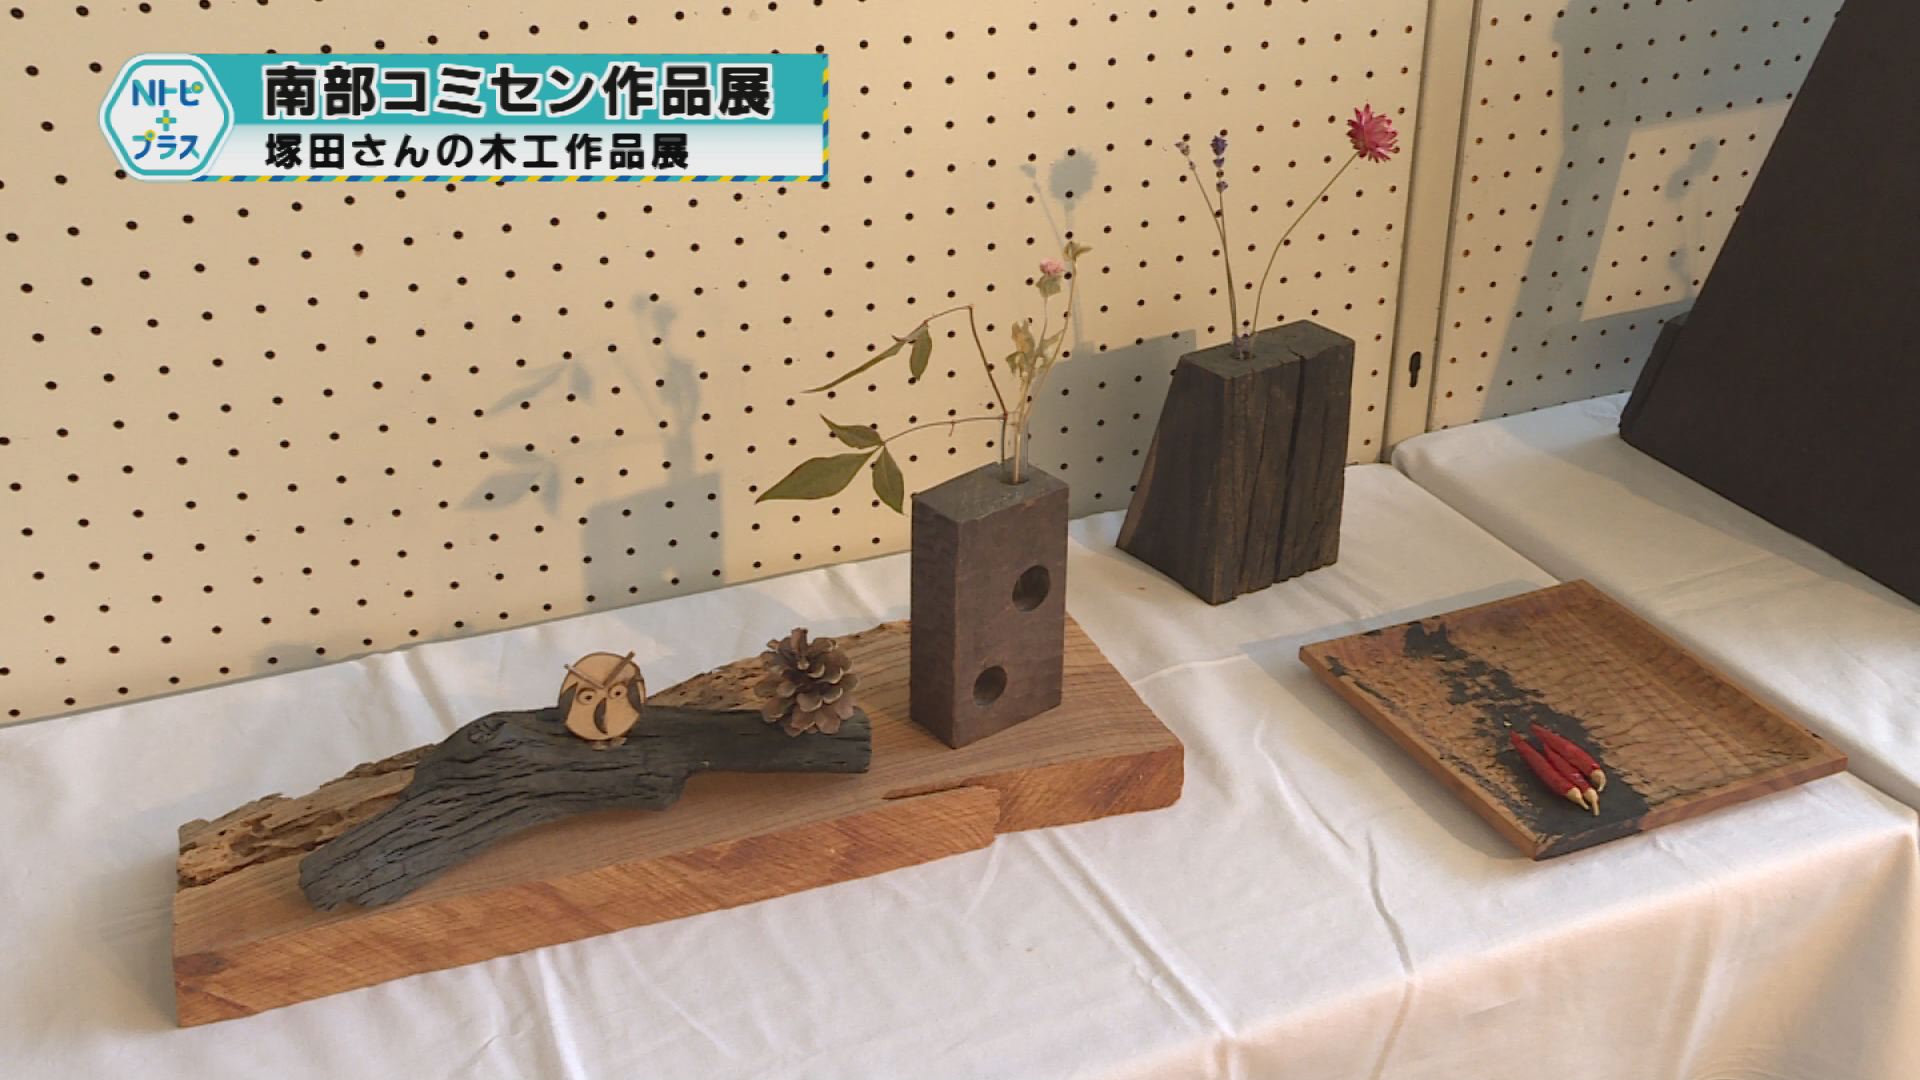 「南部コミセン作品展」塚田さんの木工作品展